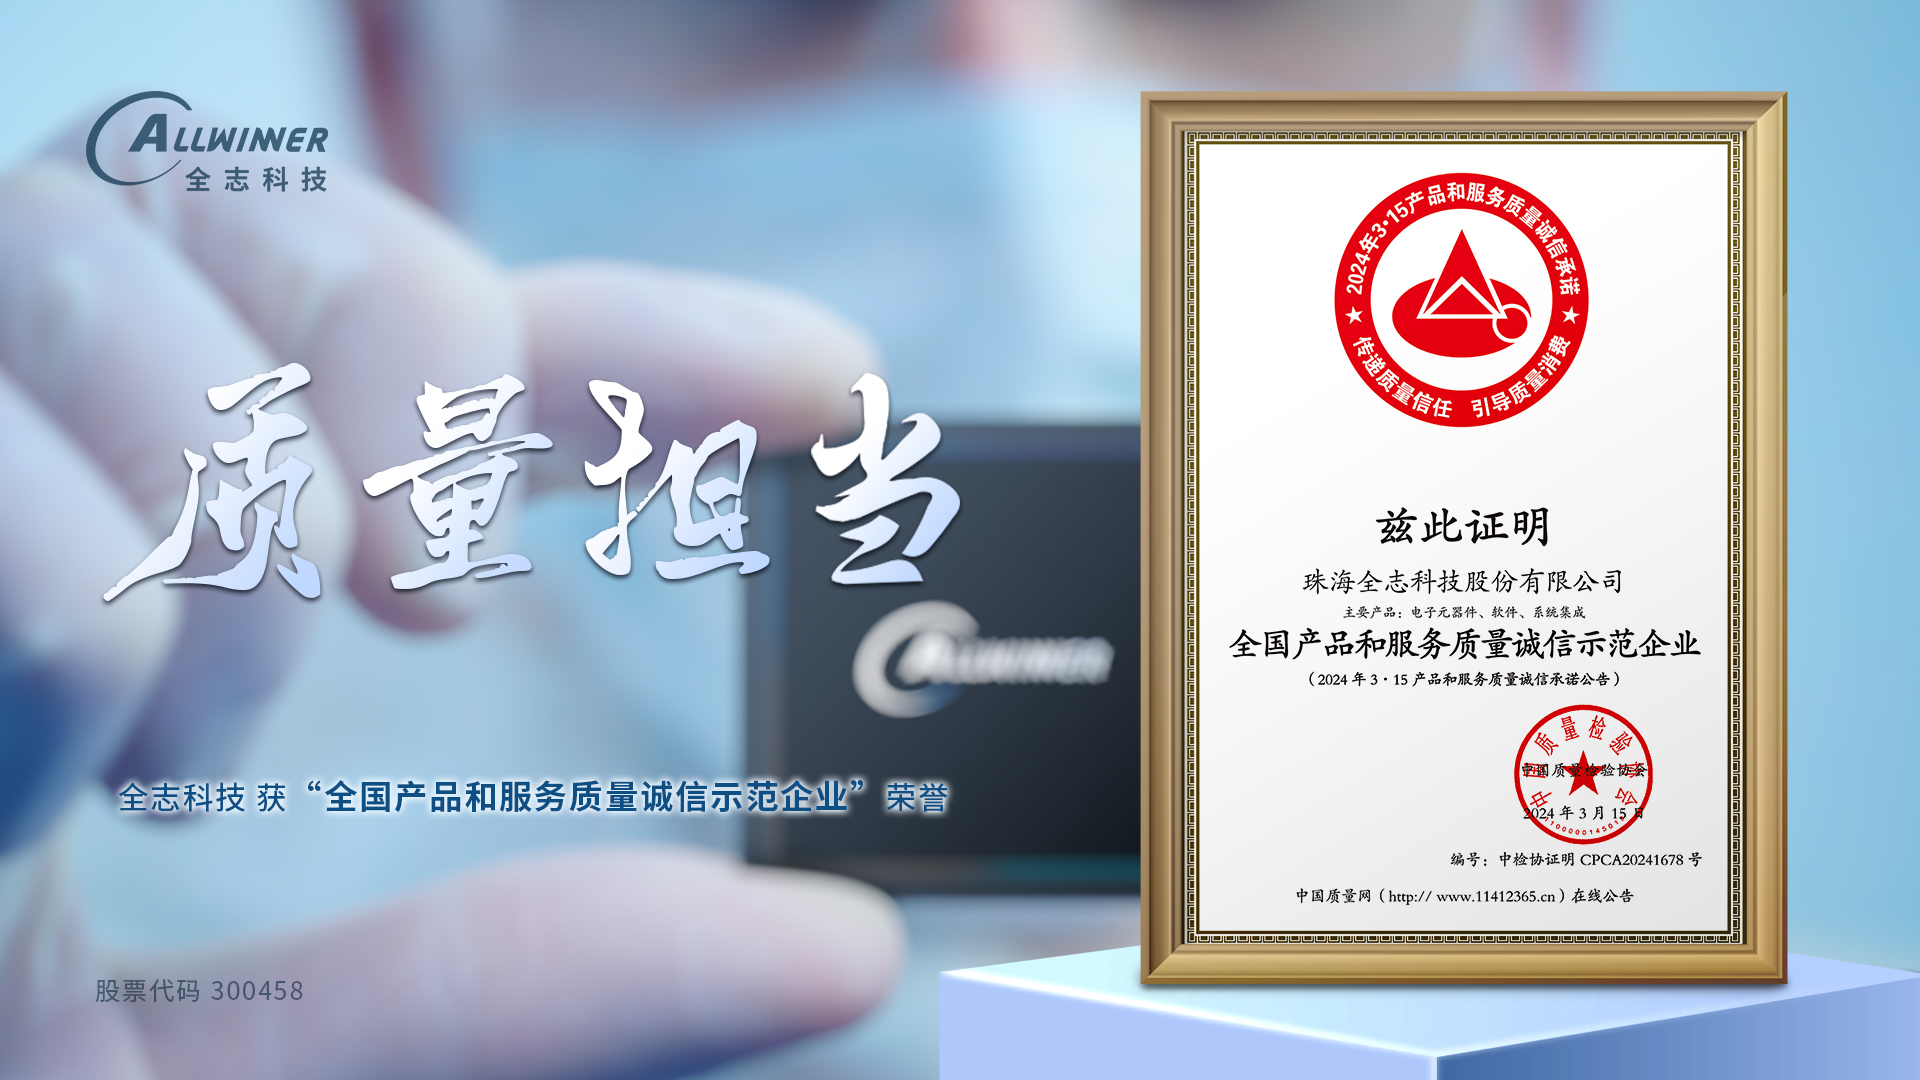 金沙app下载大厅 获 全国产品和服务质量诚信示范企业 荣誉